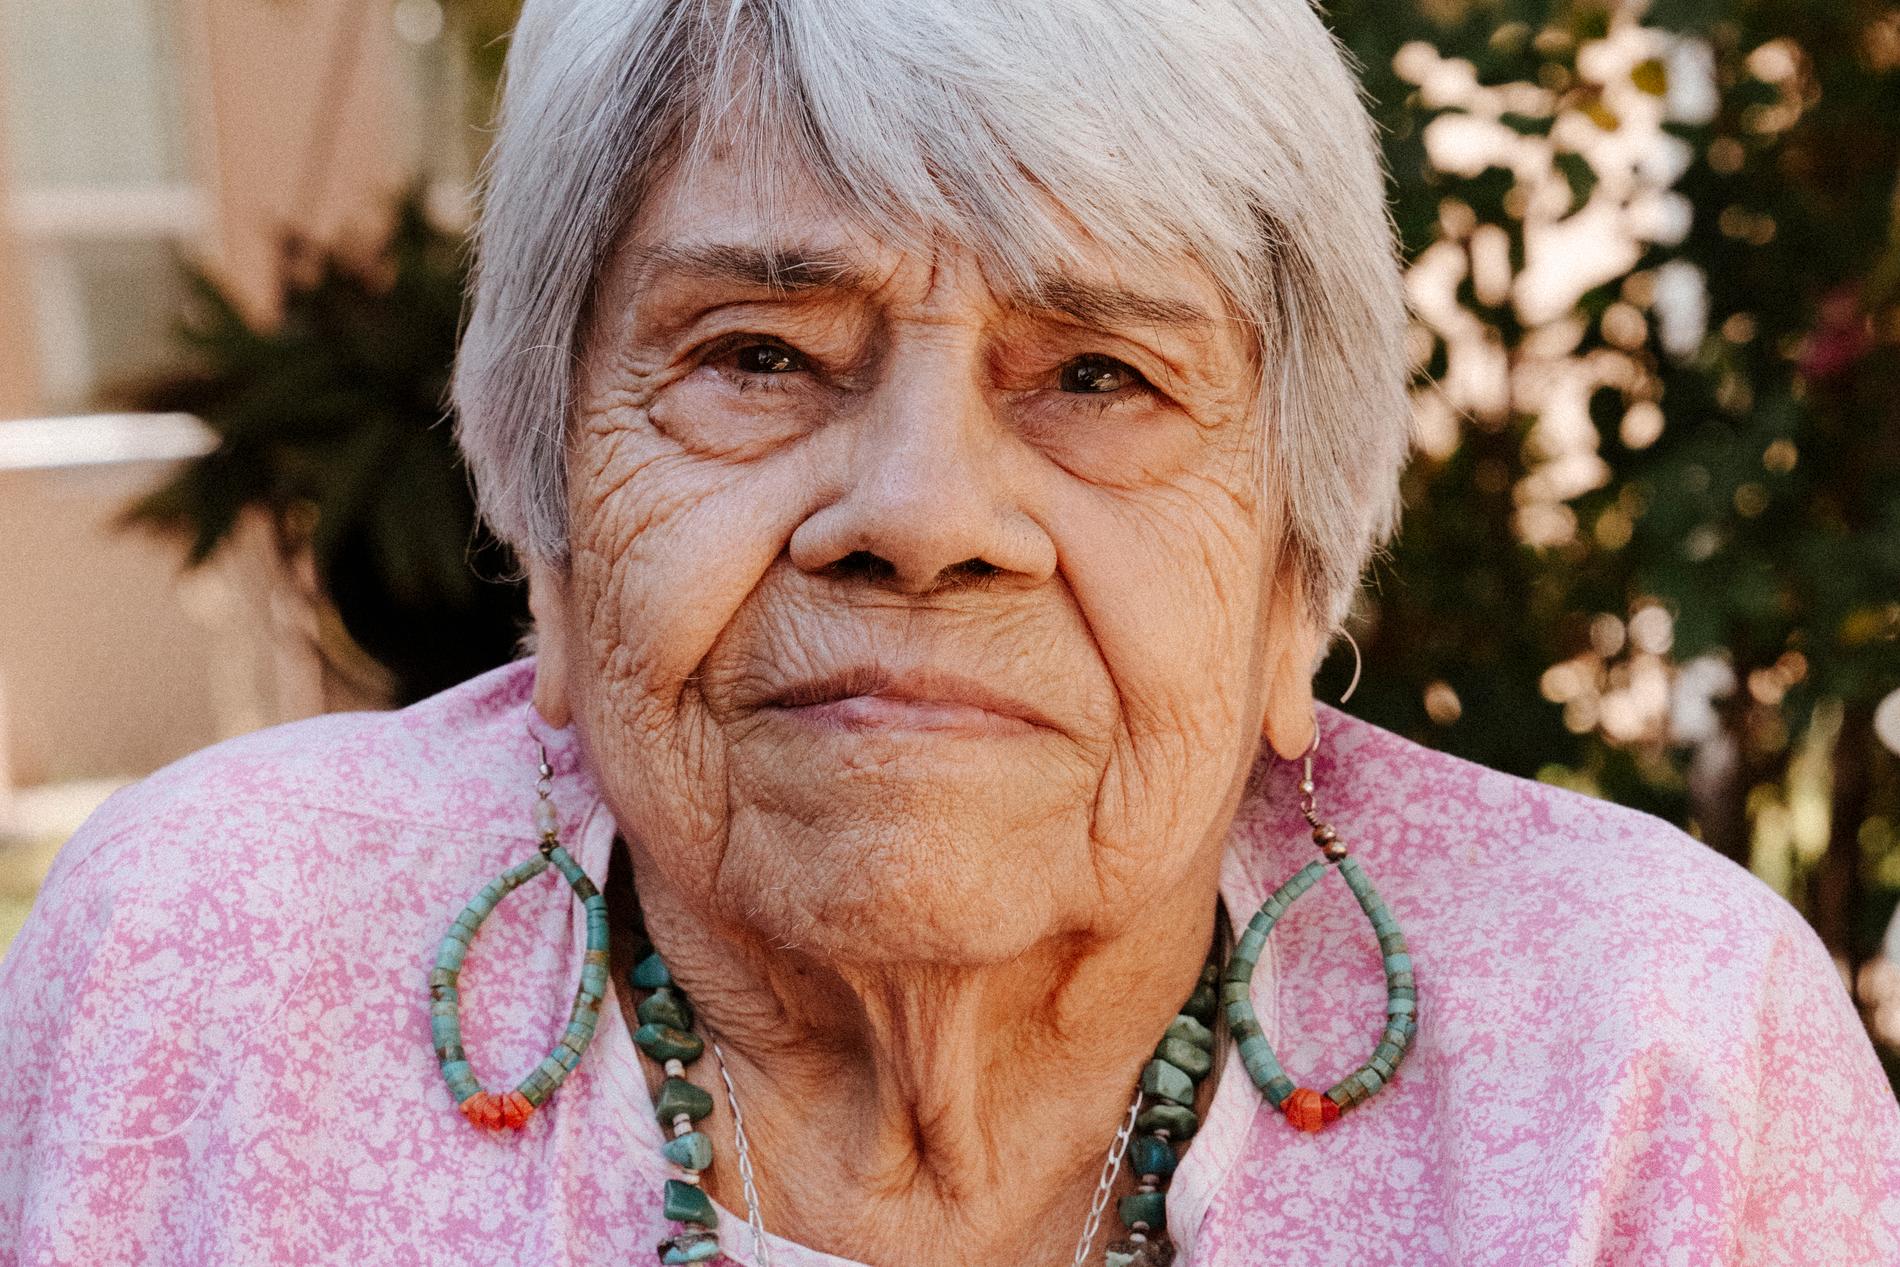 Lucy Benavidez Garwood, 91, vaknade av första kärnvapensprängningen. 